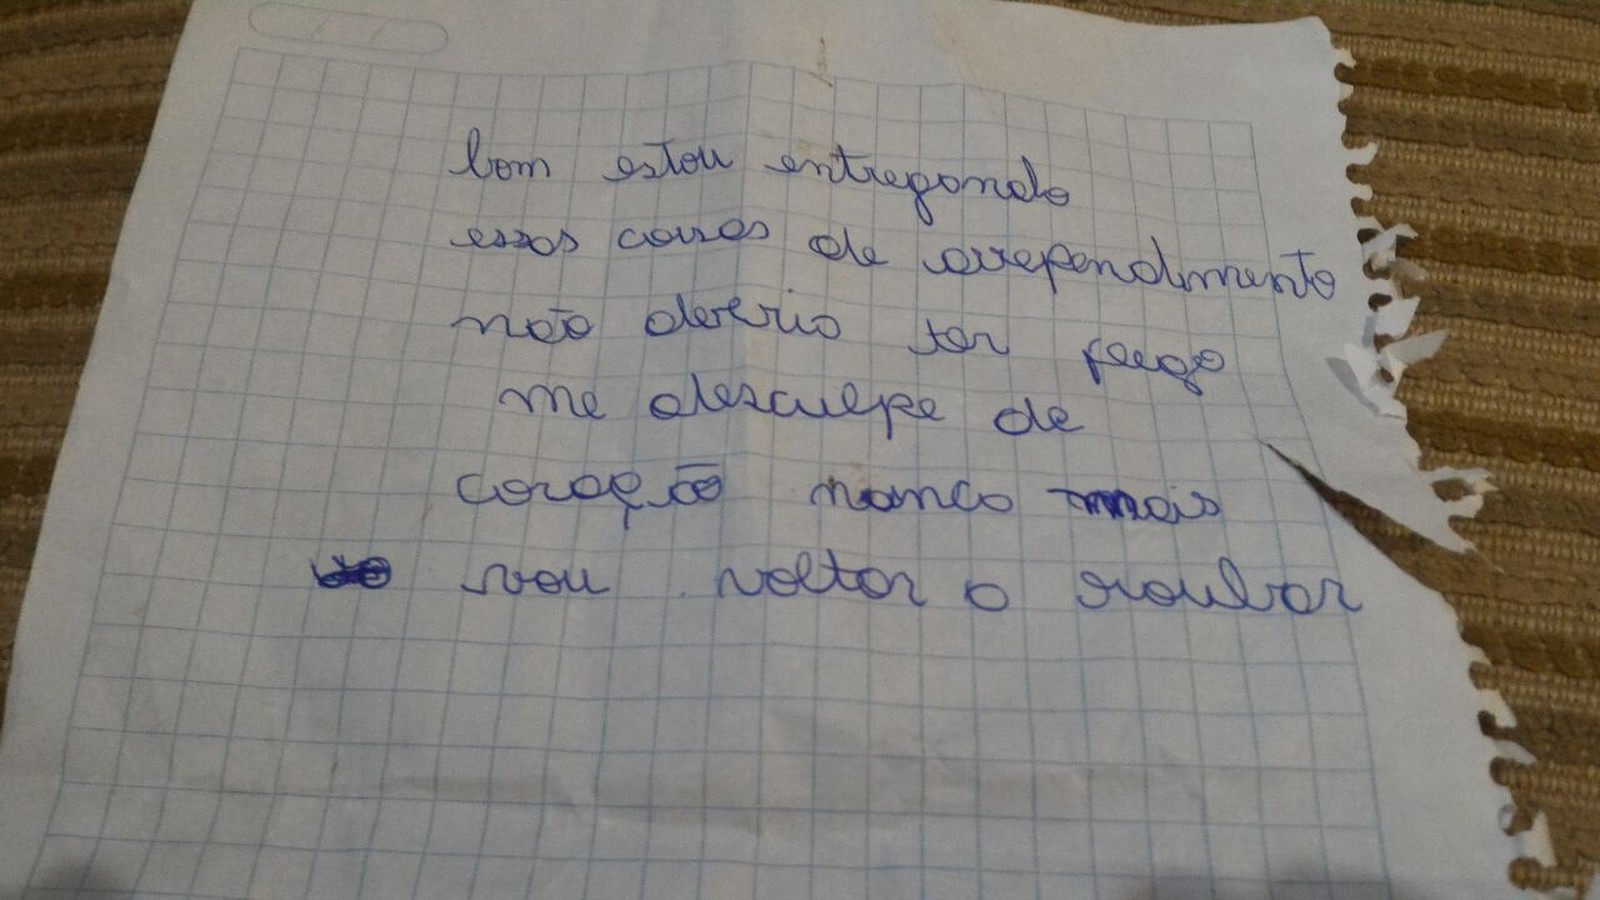 Ladrão arrependido escreveu um bilhete de desculpas - Foto: Marcos Luiz Marini/Portal Nova Santa Rosa